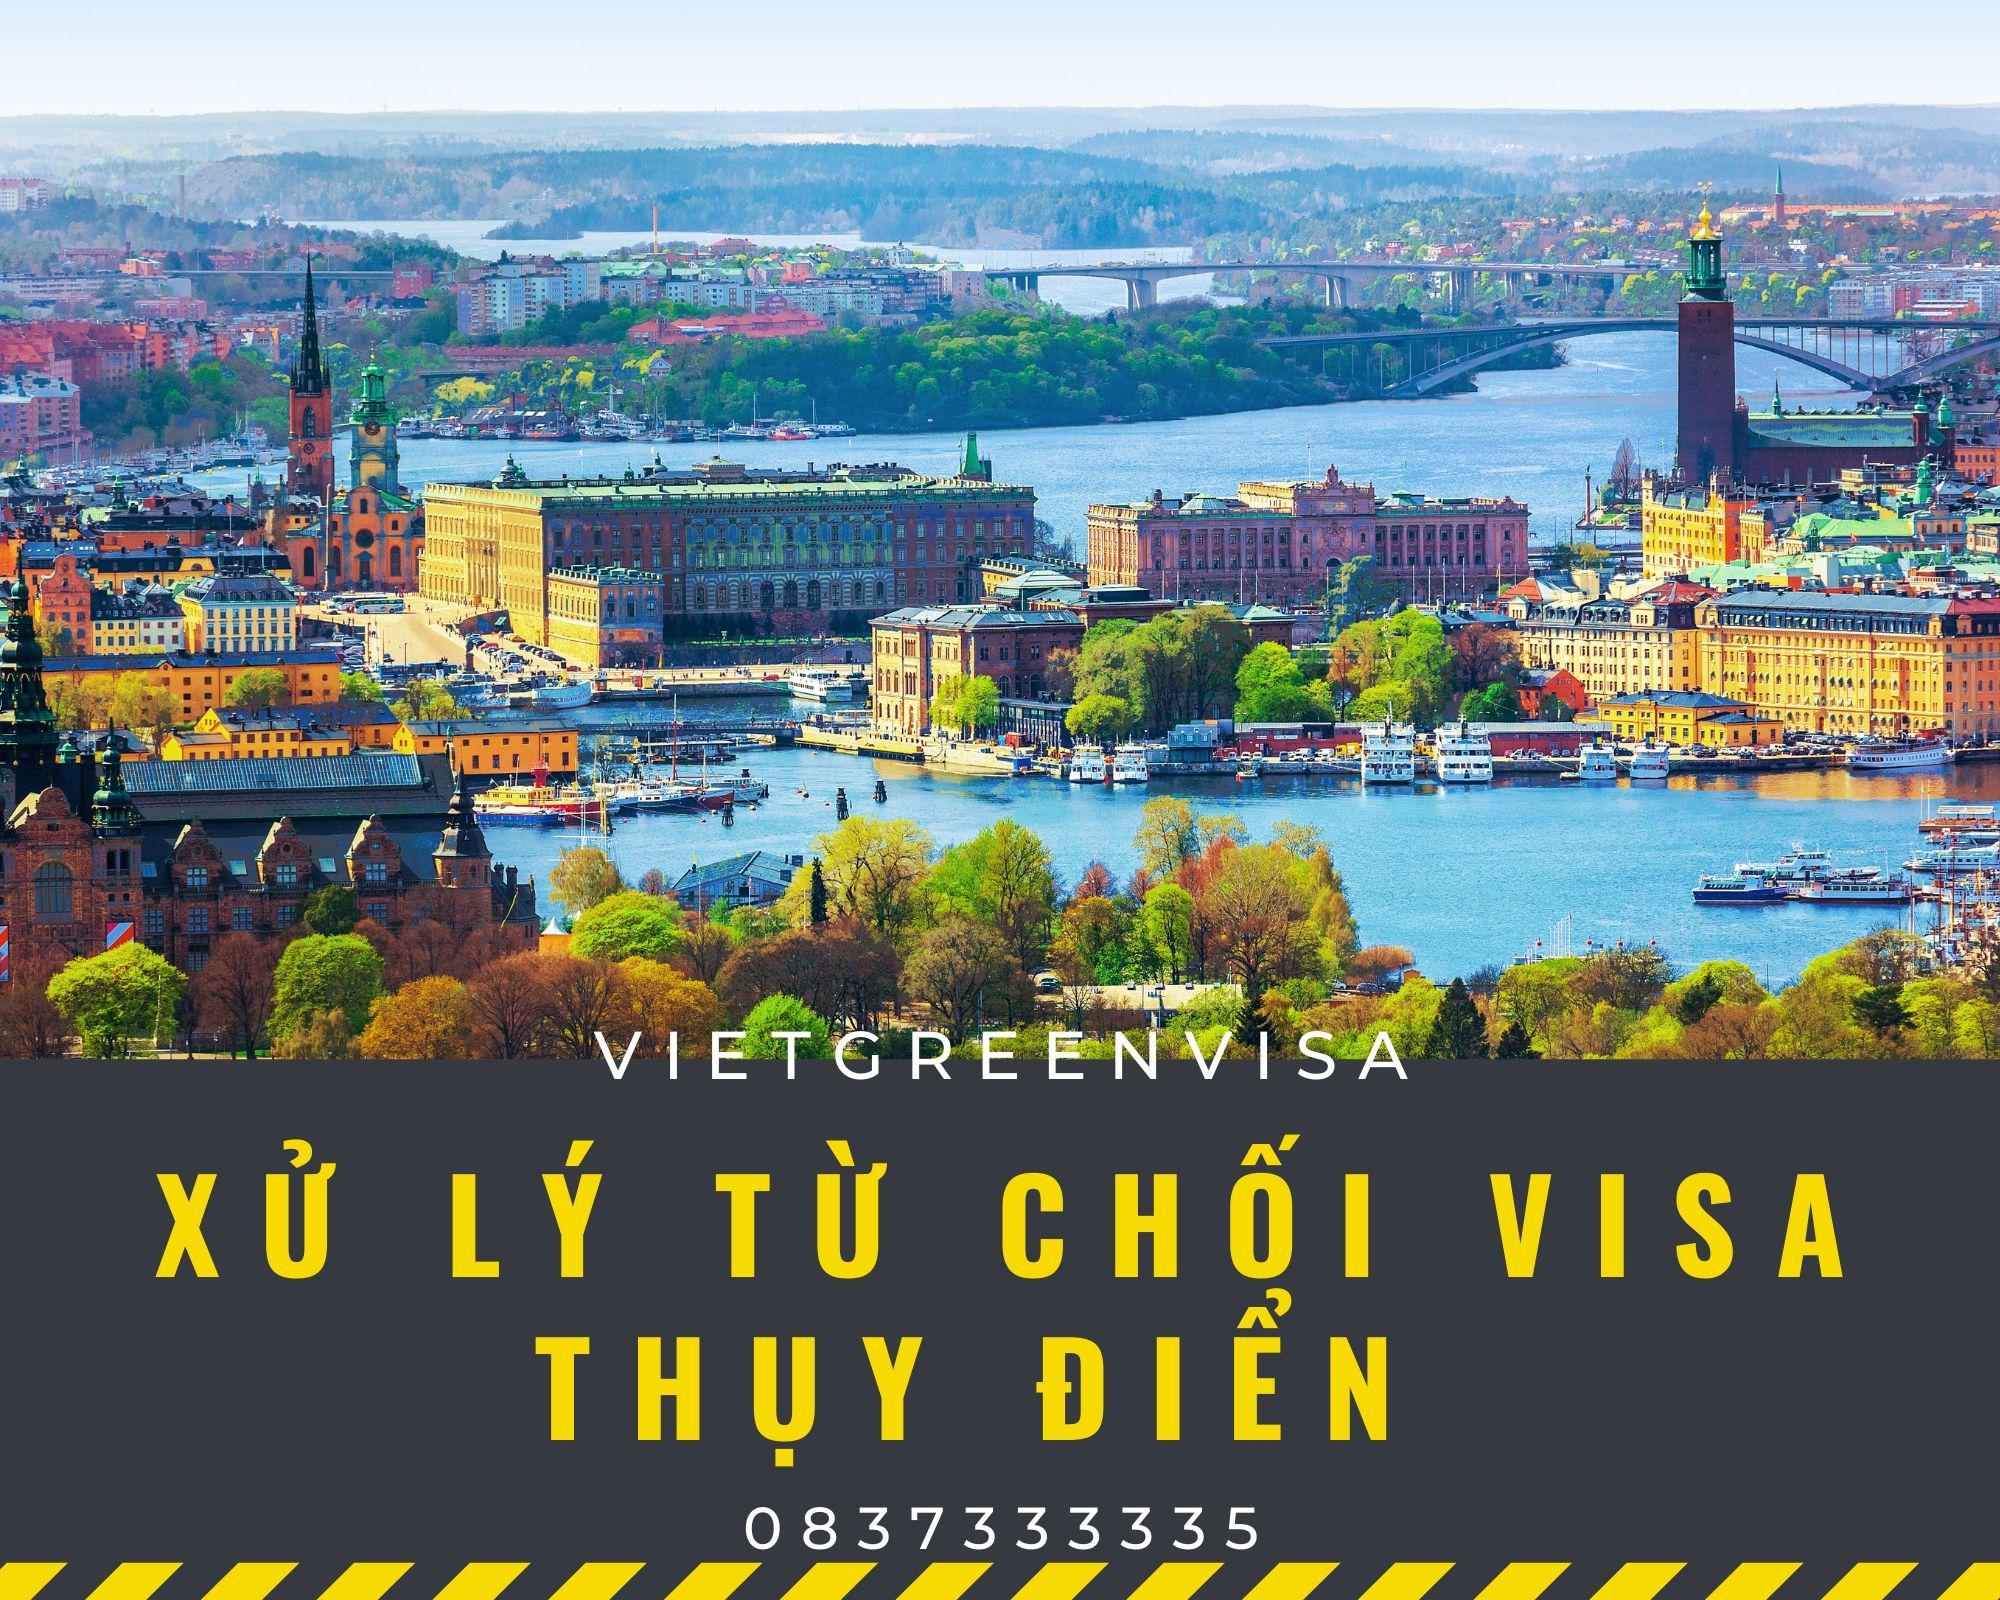 Xử lý visa Thụy Điển bị từ chối nhanh gọn